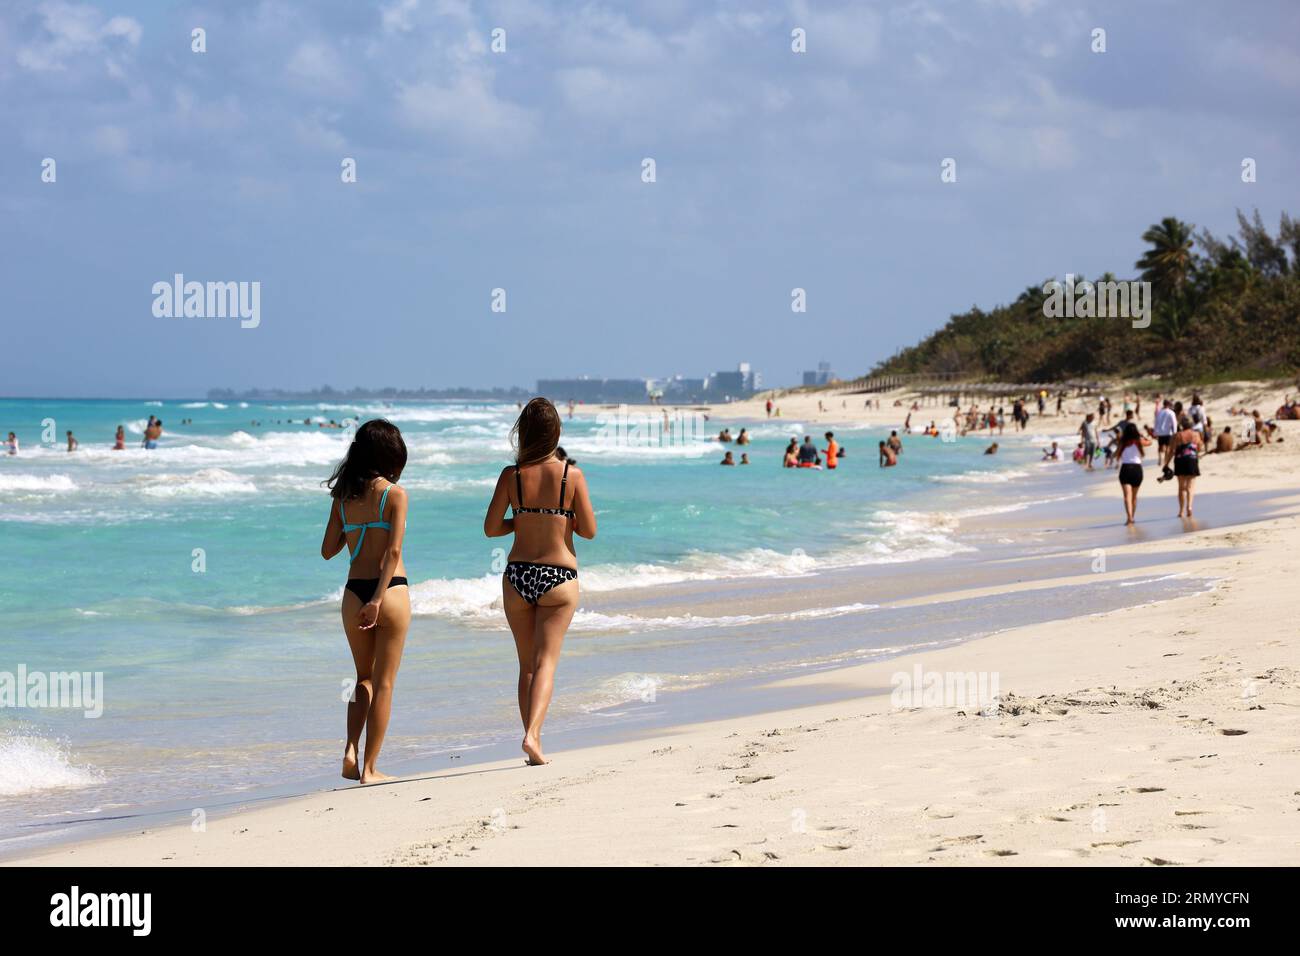 Zwei Mädchen im Bikini, die am tropischen Strand durch den Sand laufen. Ocean Coast, Touristenresort auf sonniger Insel Stockfoto